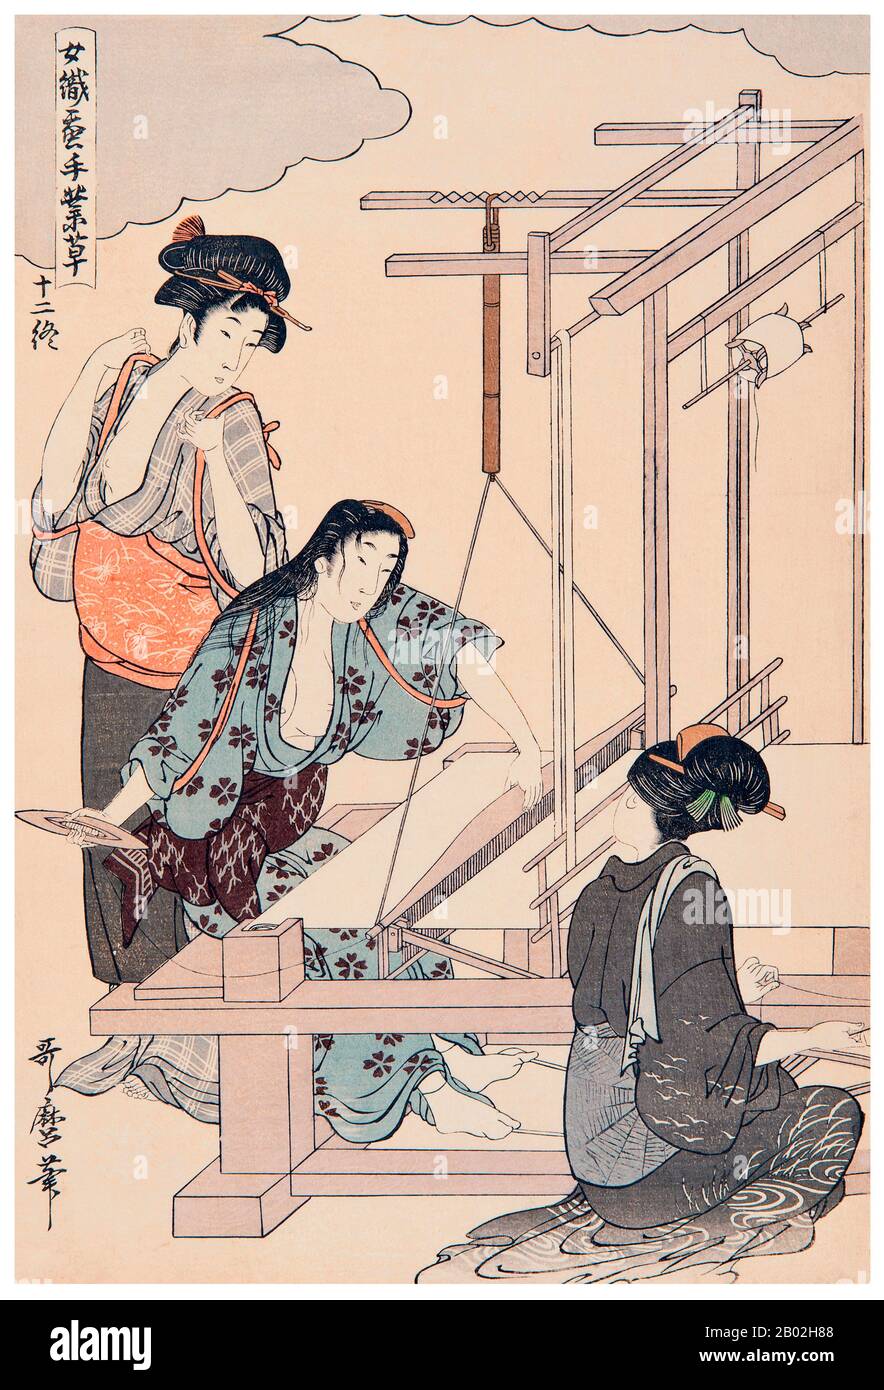 12. "Tisser la soie", représentant une femme assise avant un métier à tisser sur le point de jeter la navette, deux assistants debout à côté. Kitagawa Utamaro (env. 1753 - 31 octobre 1806) était un peintre et graveur japonais, considéré comme l'un des plus grands artistes de gravures de bois (ukiyo-e). Il est surtout connu pour ses études magistralement composées de femmes, connues sous le nom de bijinga. Il a également produit des études sur la nature, notamment des livres illustrés d'insectes. Banque D'Images